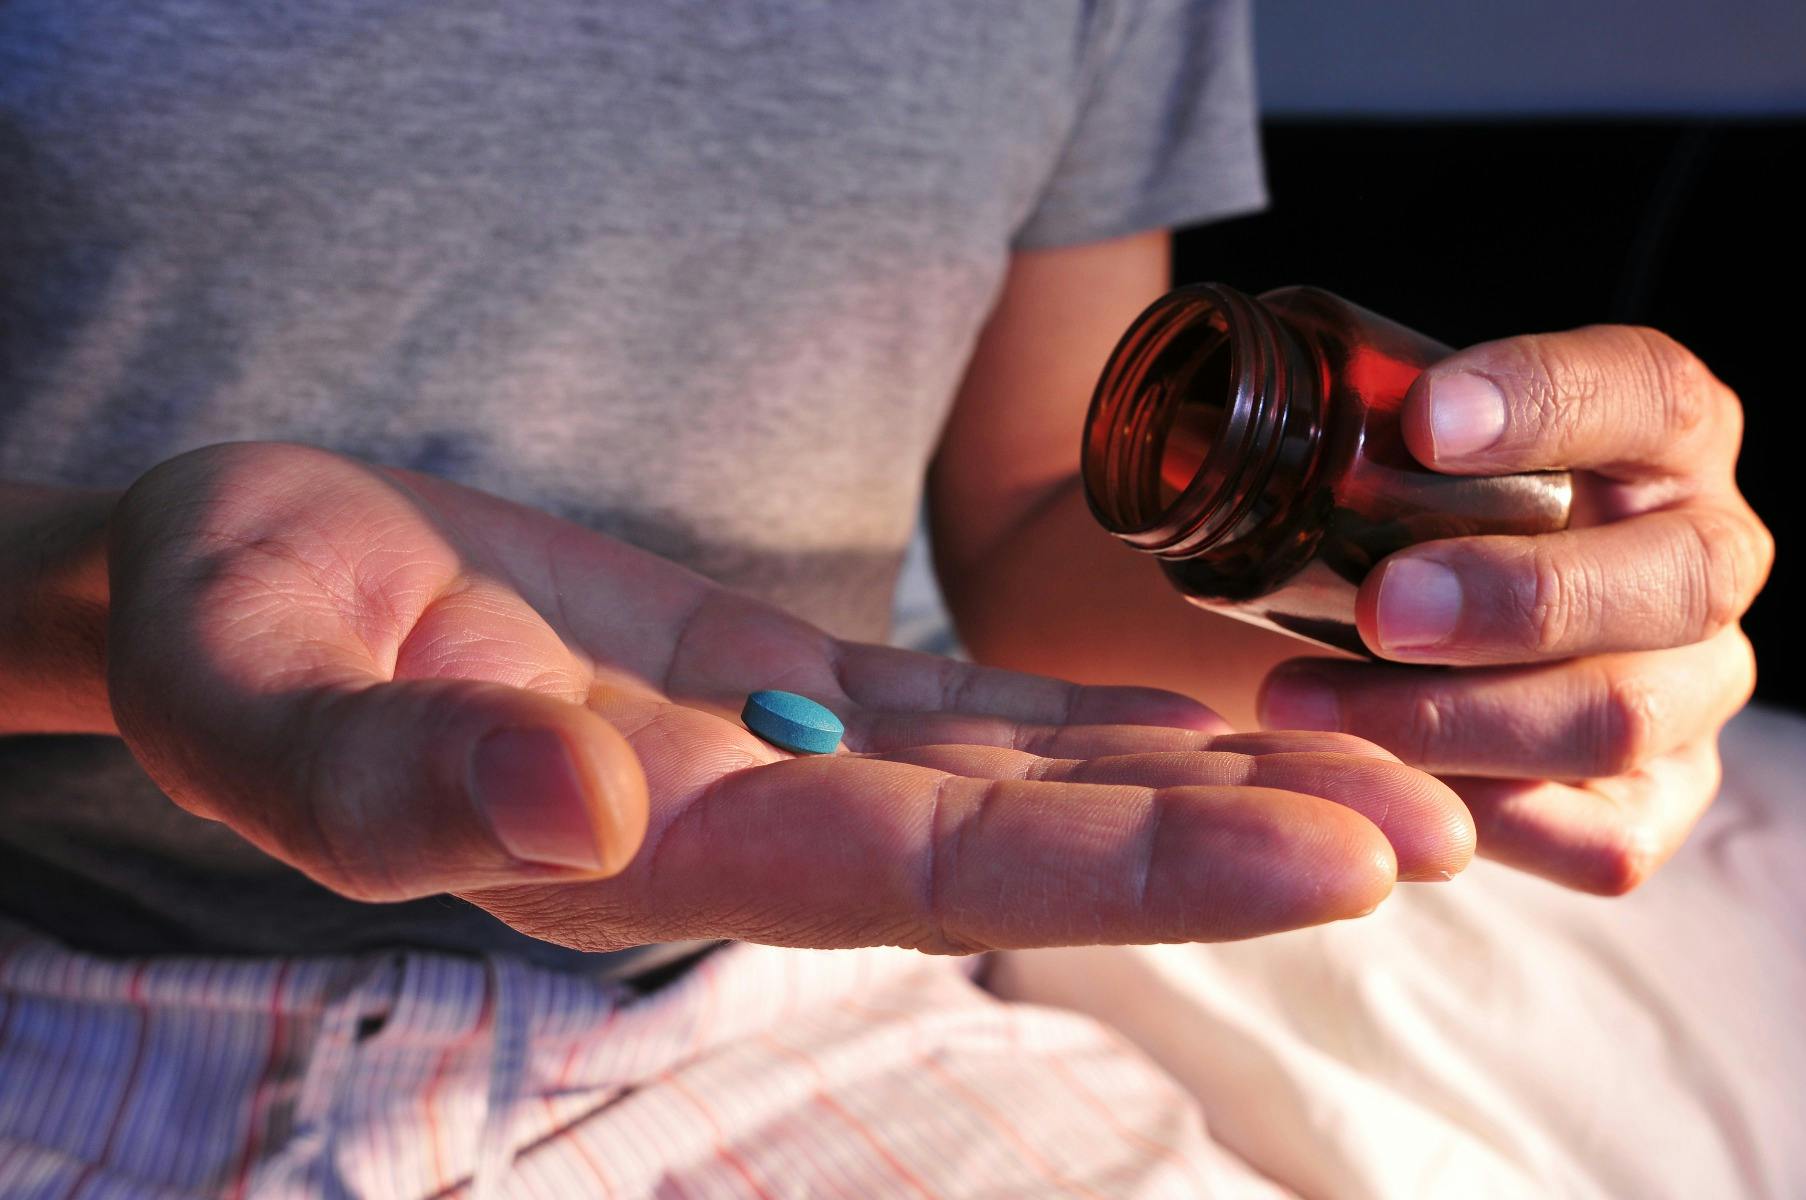 Viagra-Pille (die blaue Pille) wird aus einer Flasche in die Handfläche gegossen